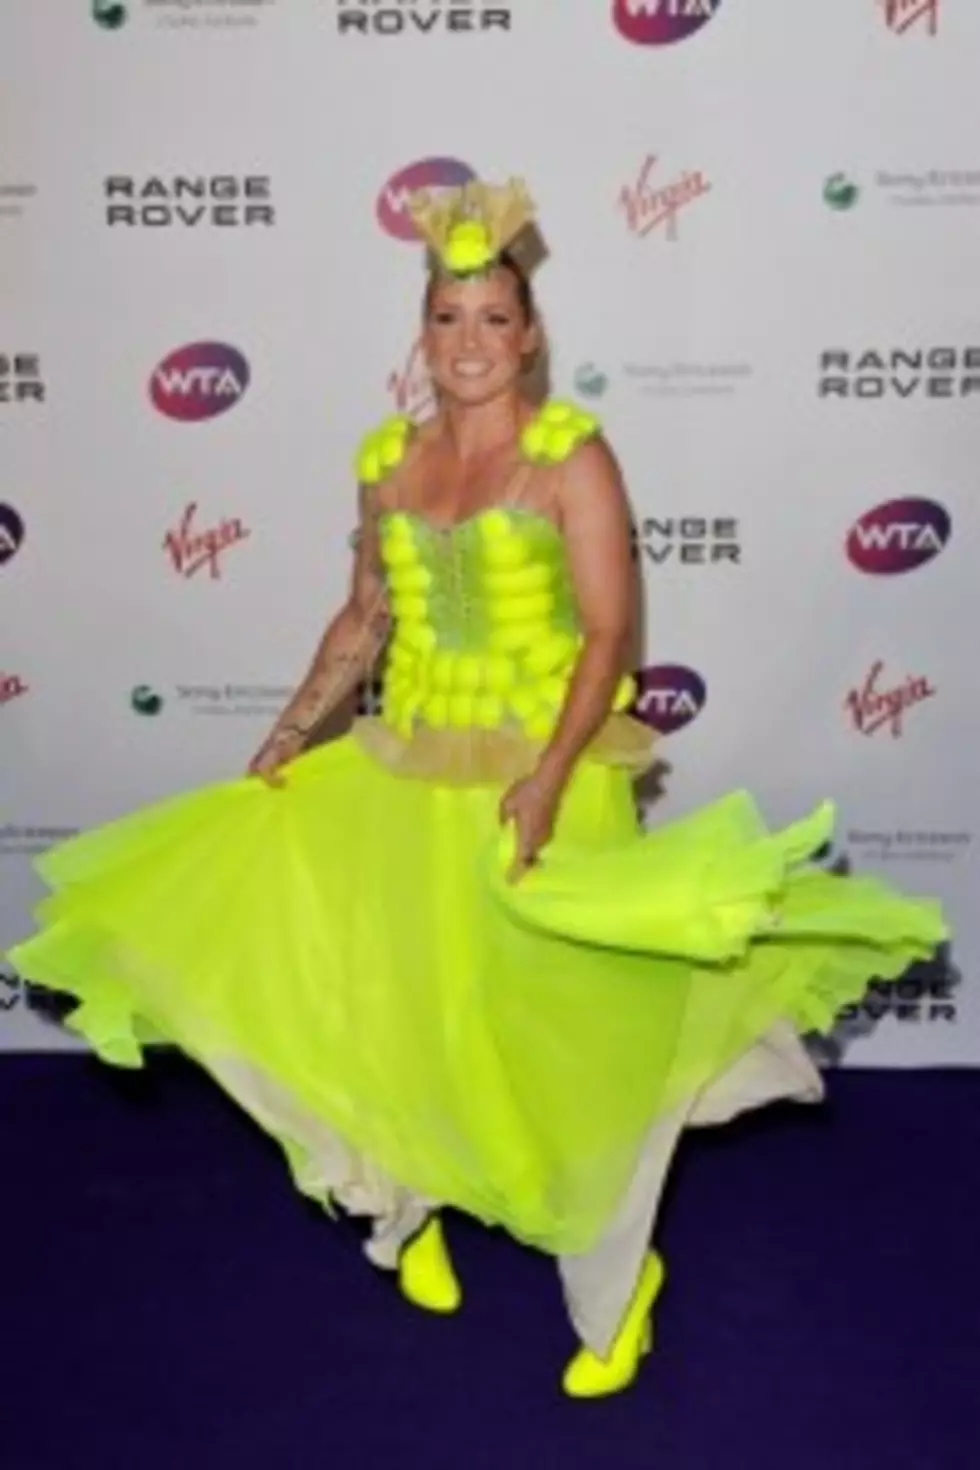 Bethanie Mattek-Sands Wears A Tennis Ball Dress!